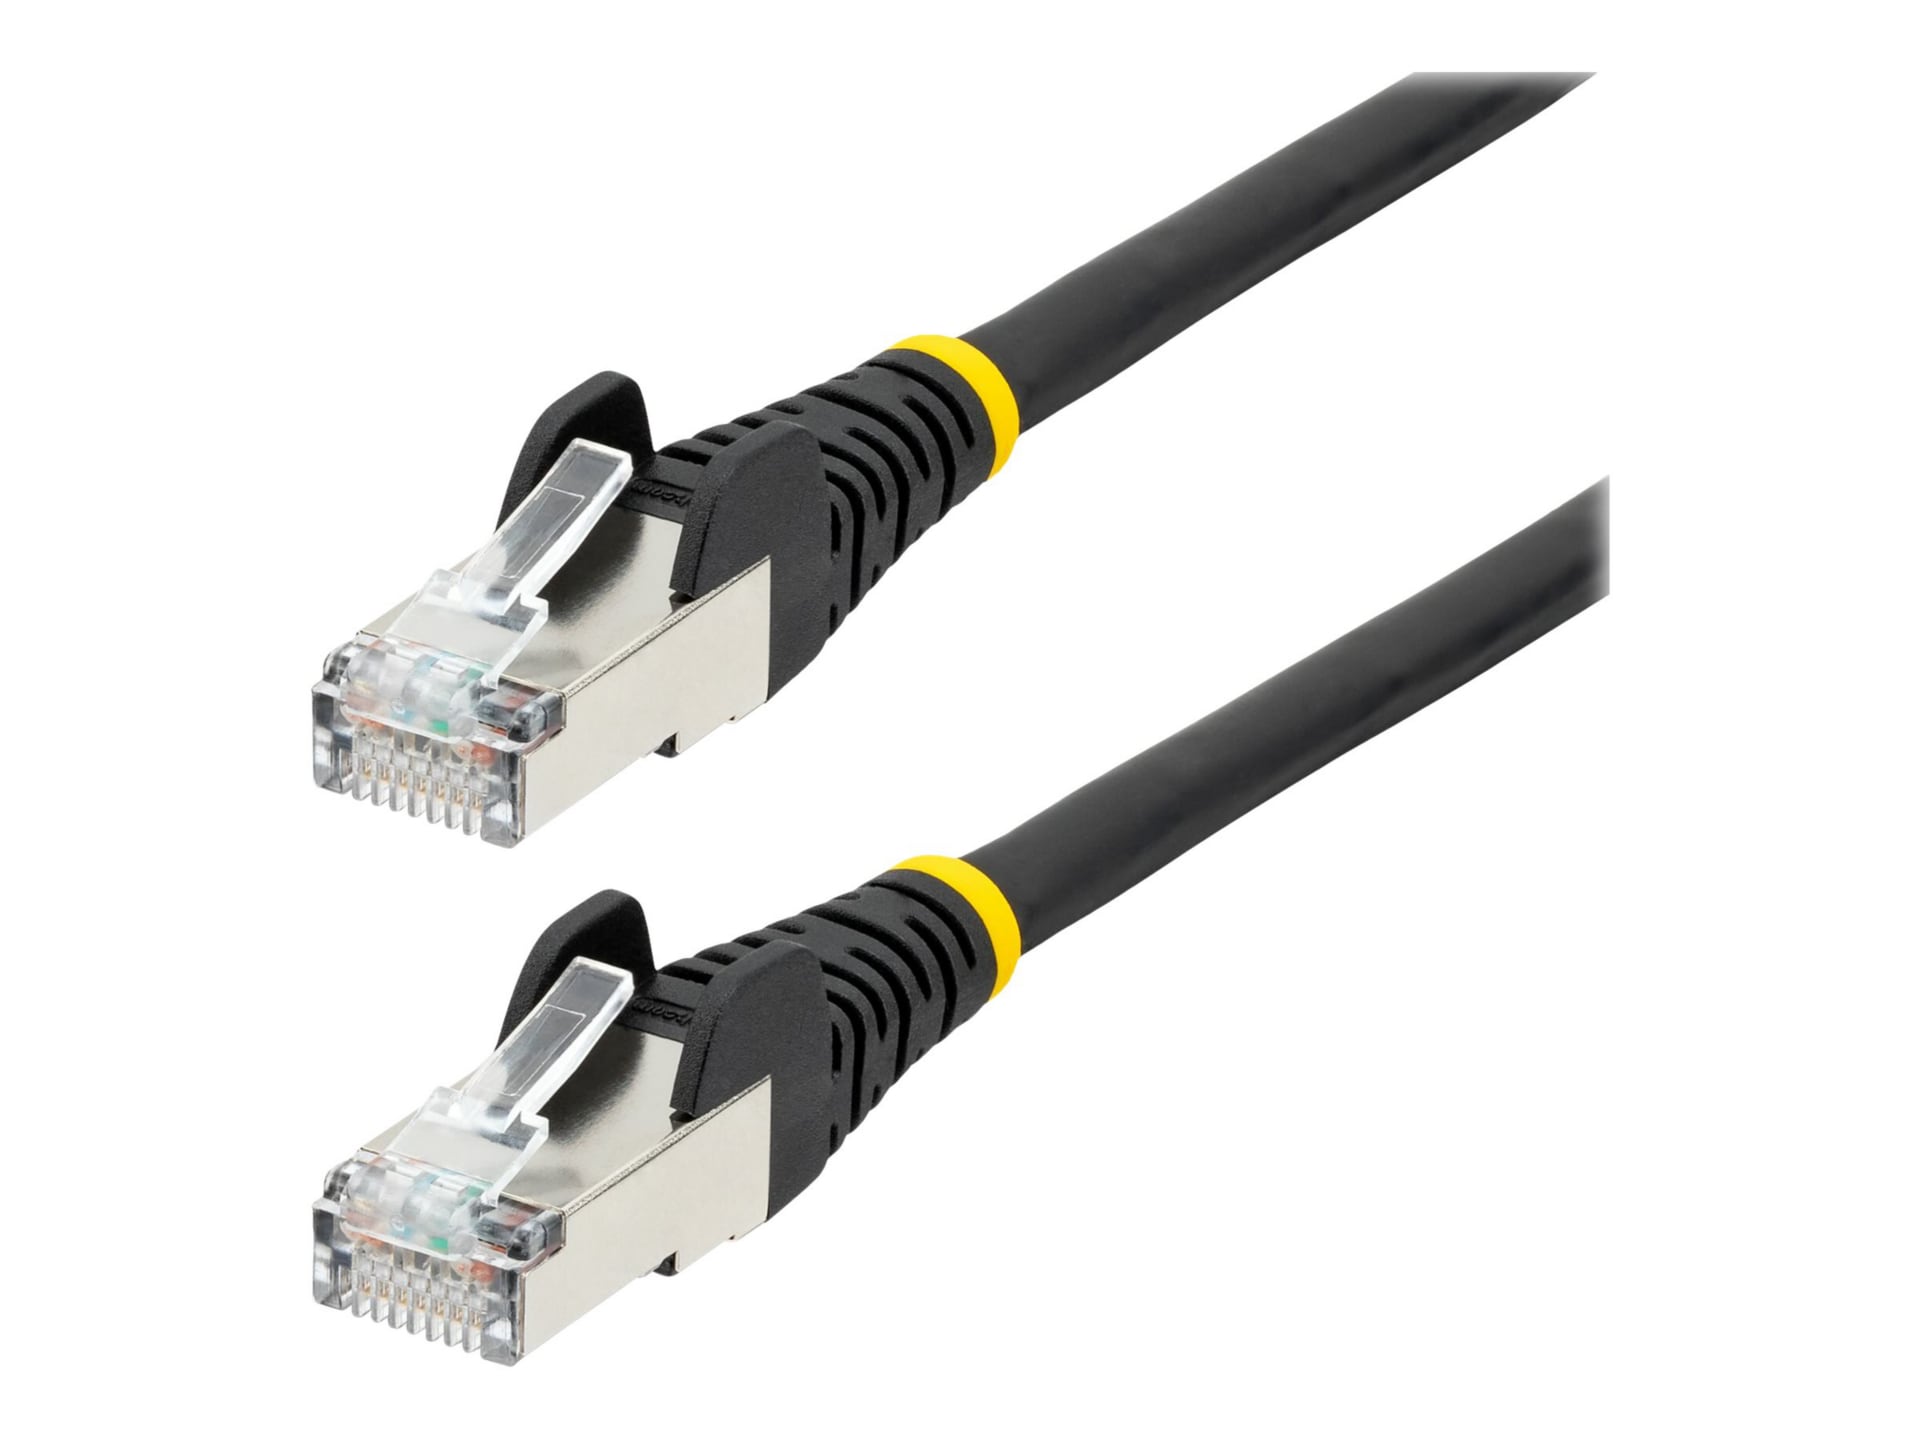 StarTech.com 12ft CAT6a Ethernet Cable, Black Low Smoke Zero Halogen (LSZH)